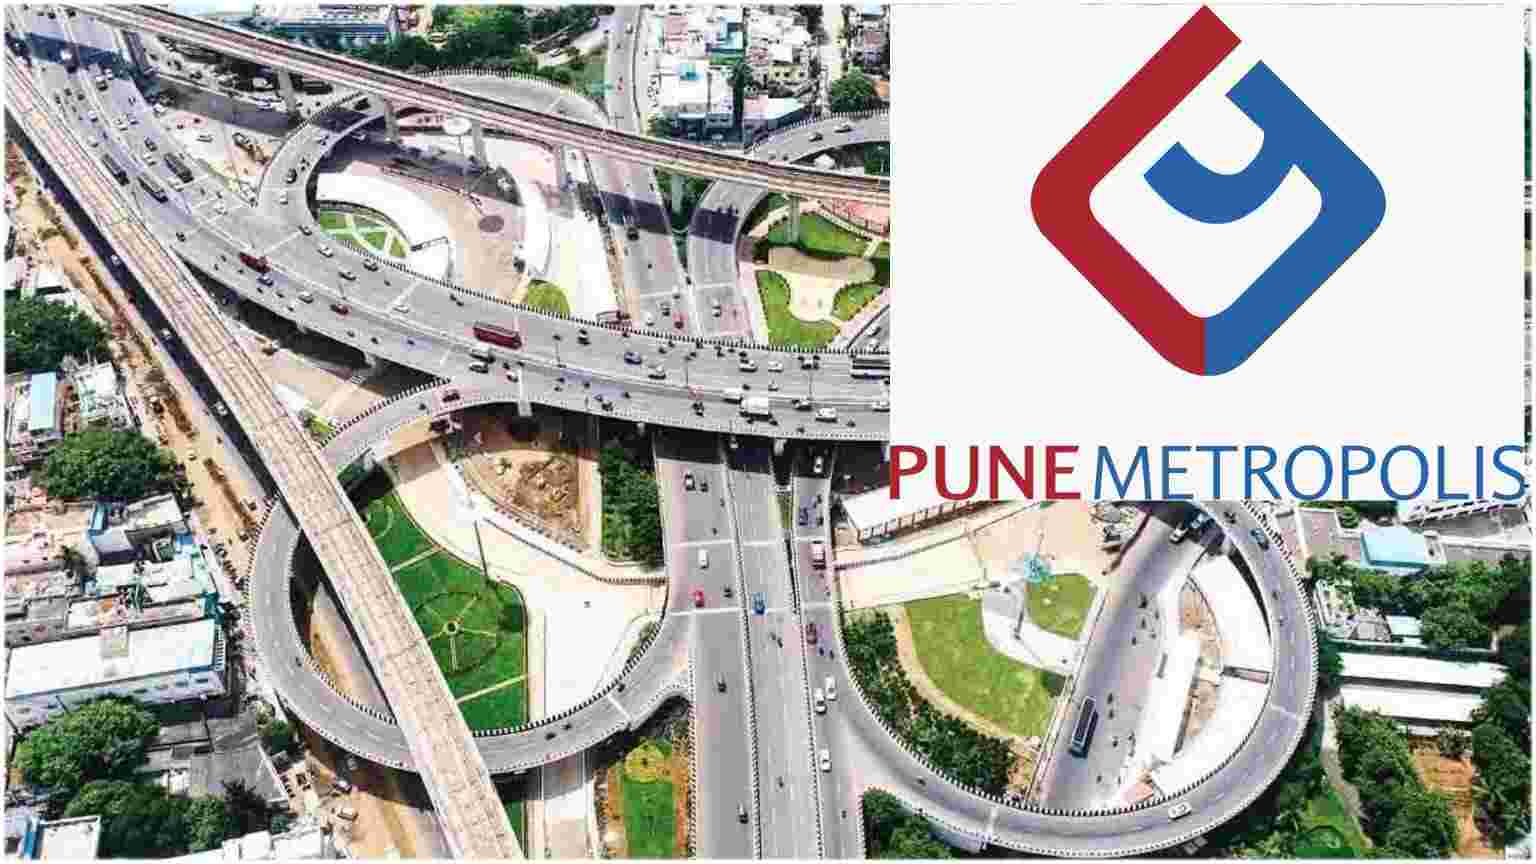 Pune Metropolitan Region Development Authority